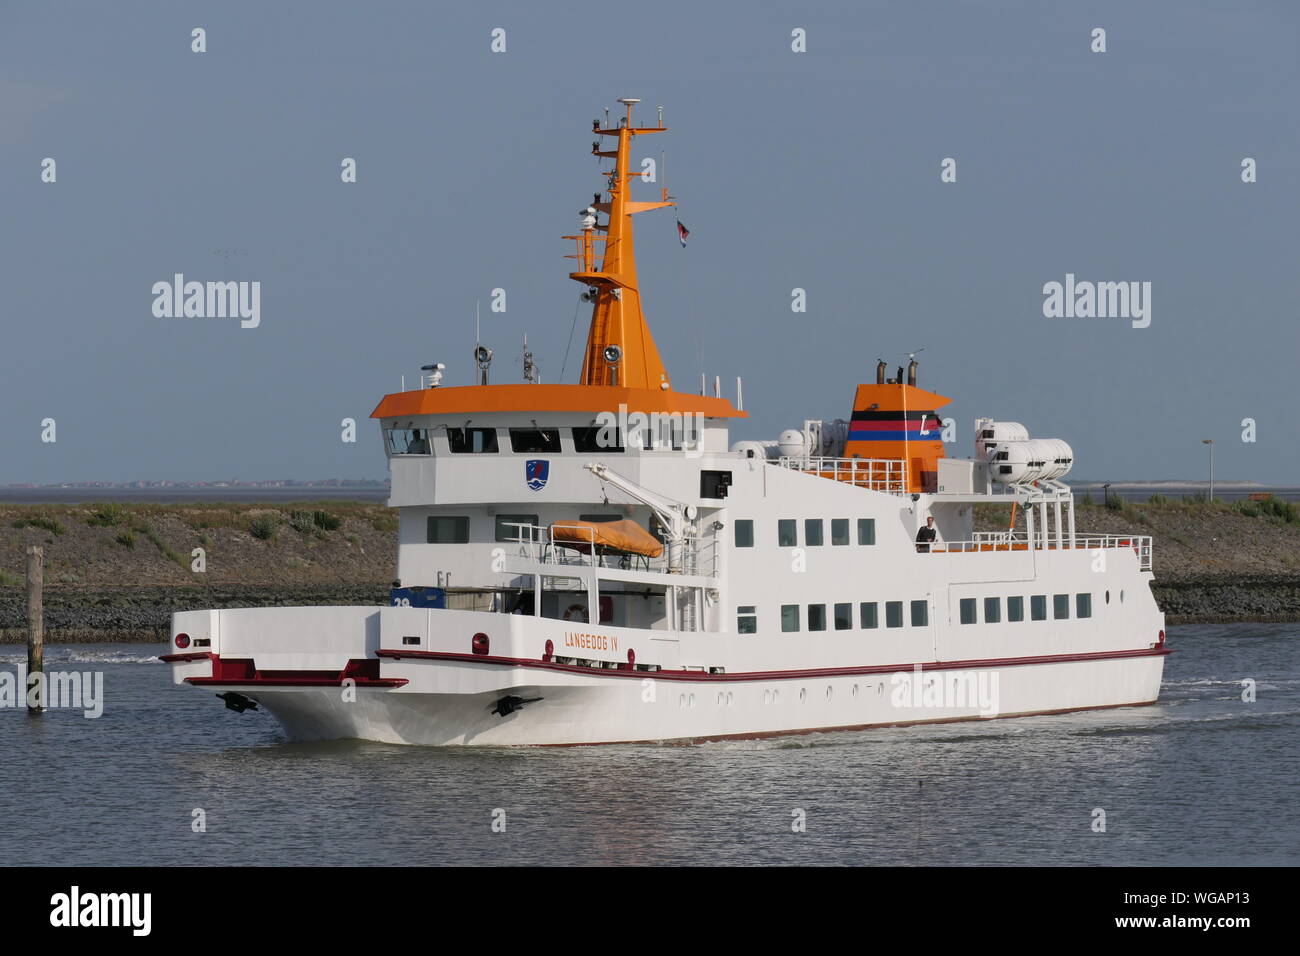 The passenger ship Langeoog IV leaves the port of Bensersiel on June 24, 2019. Stock Photo